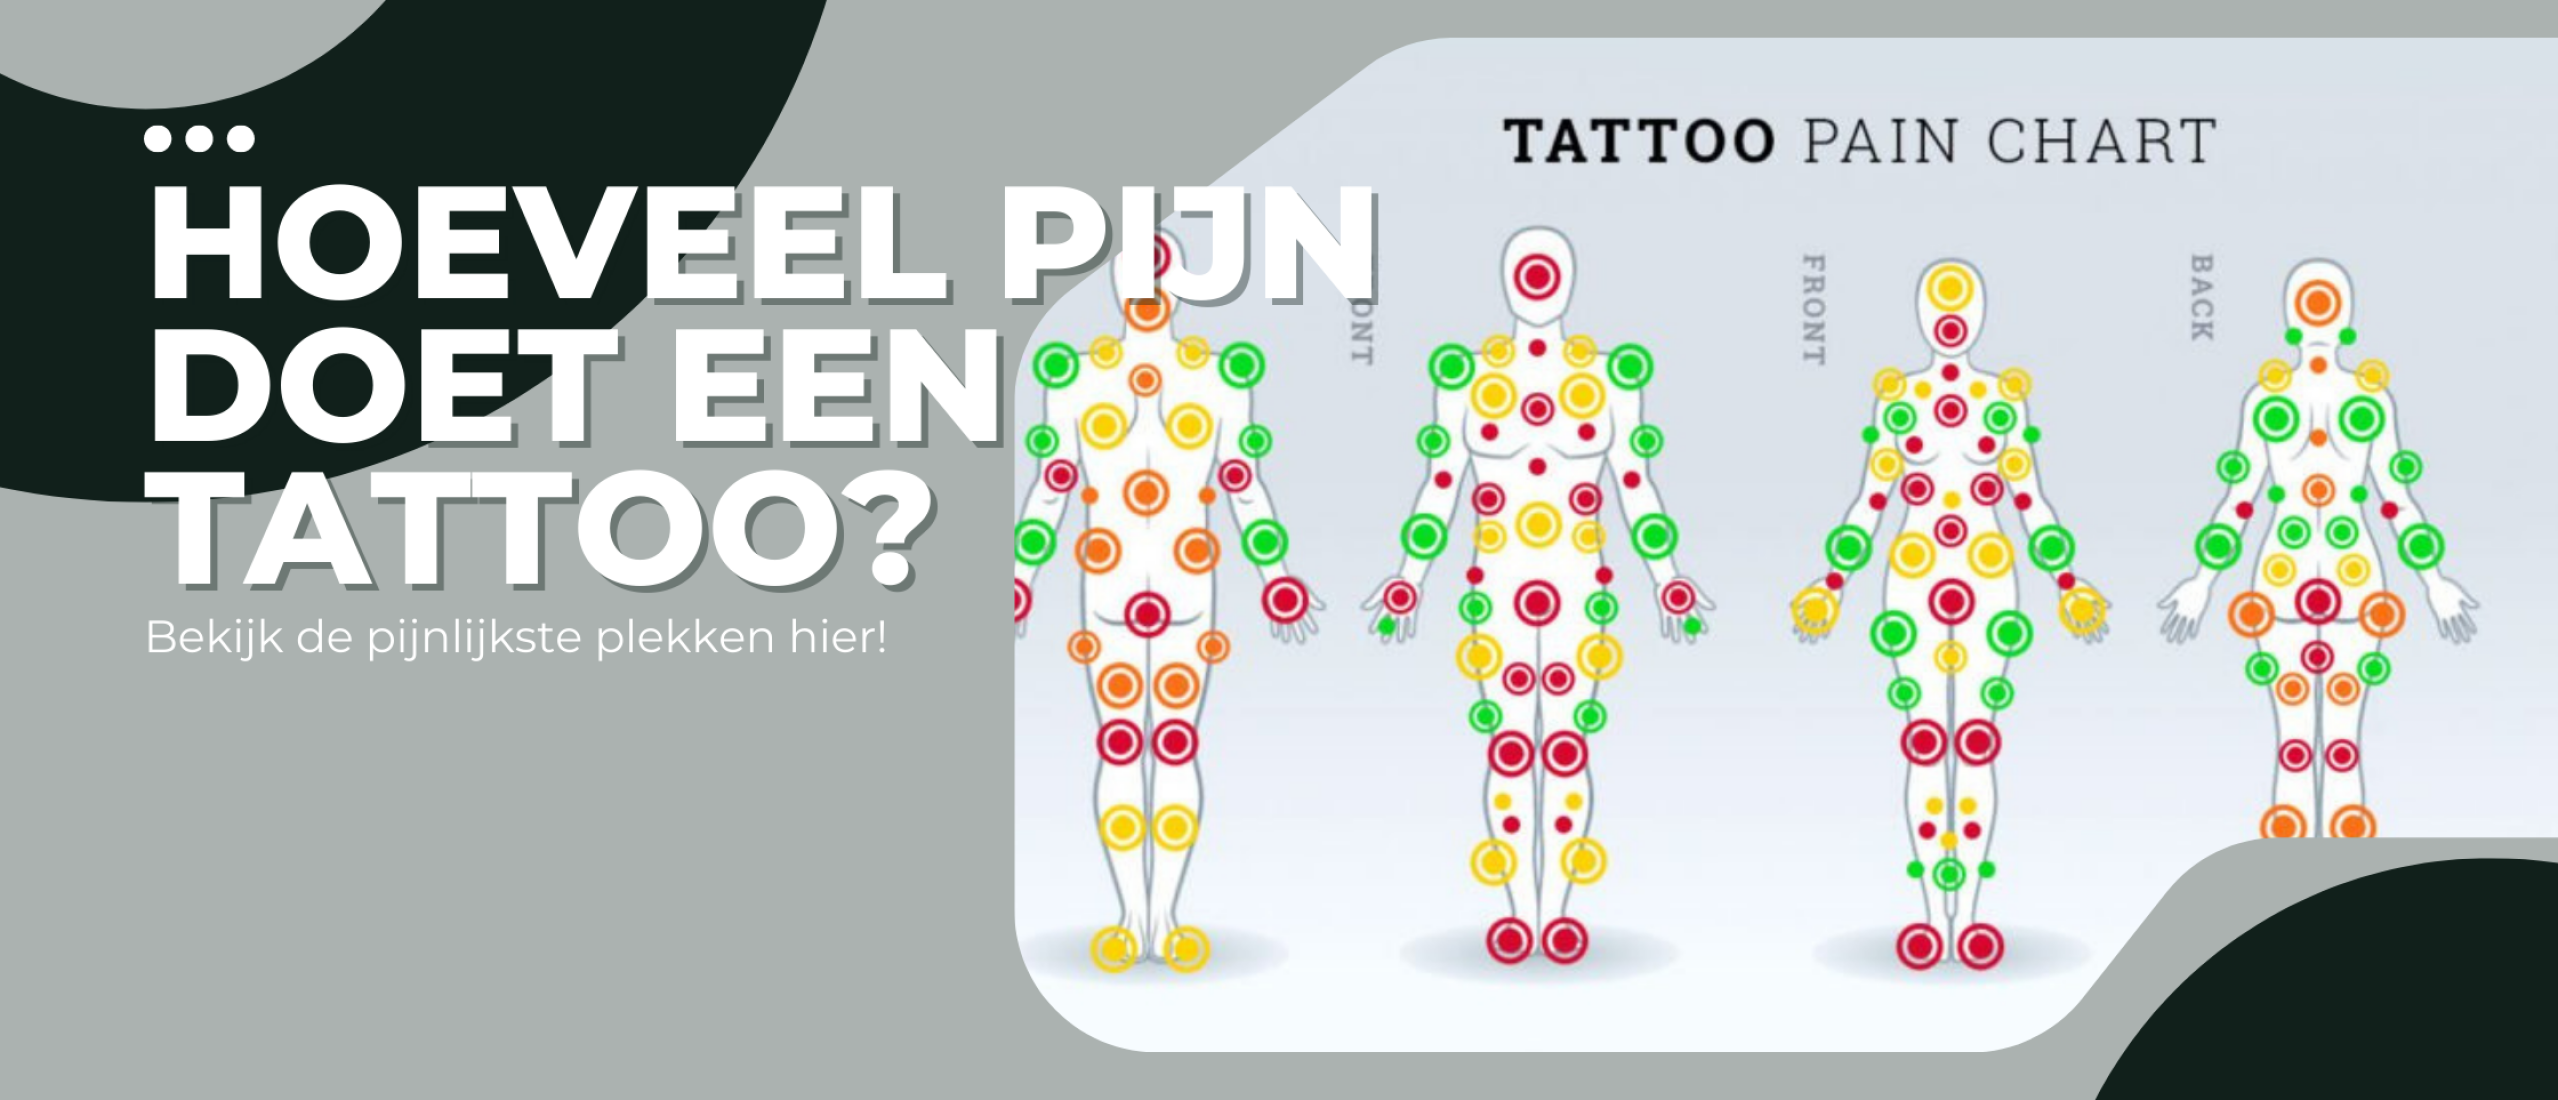 Hoeveel pijn doet een tattoo?